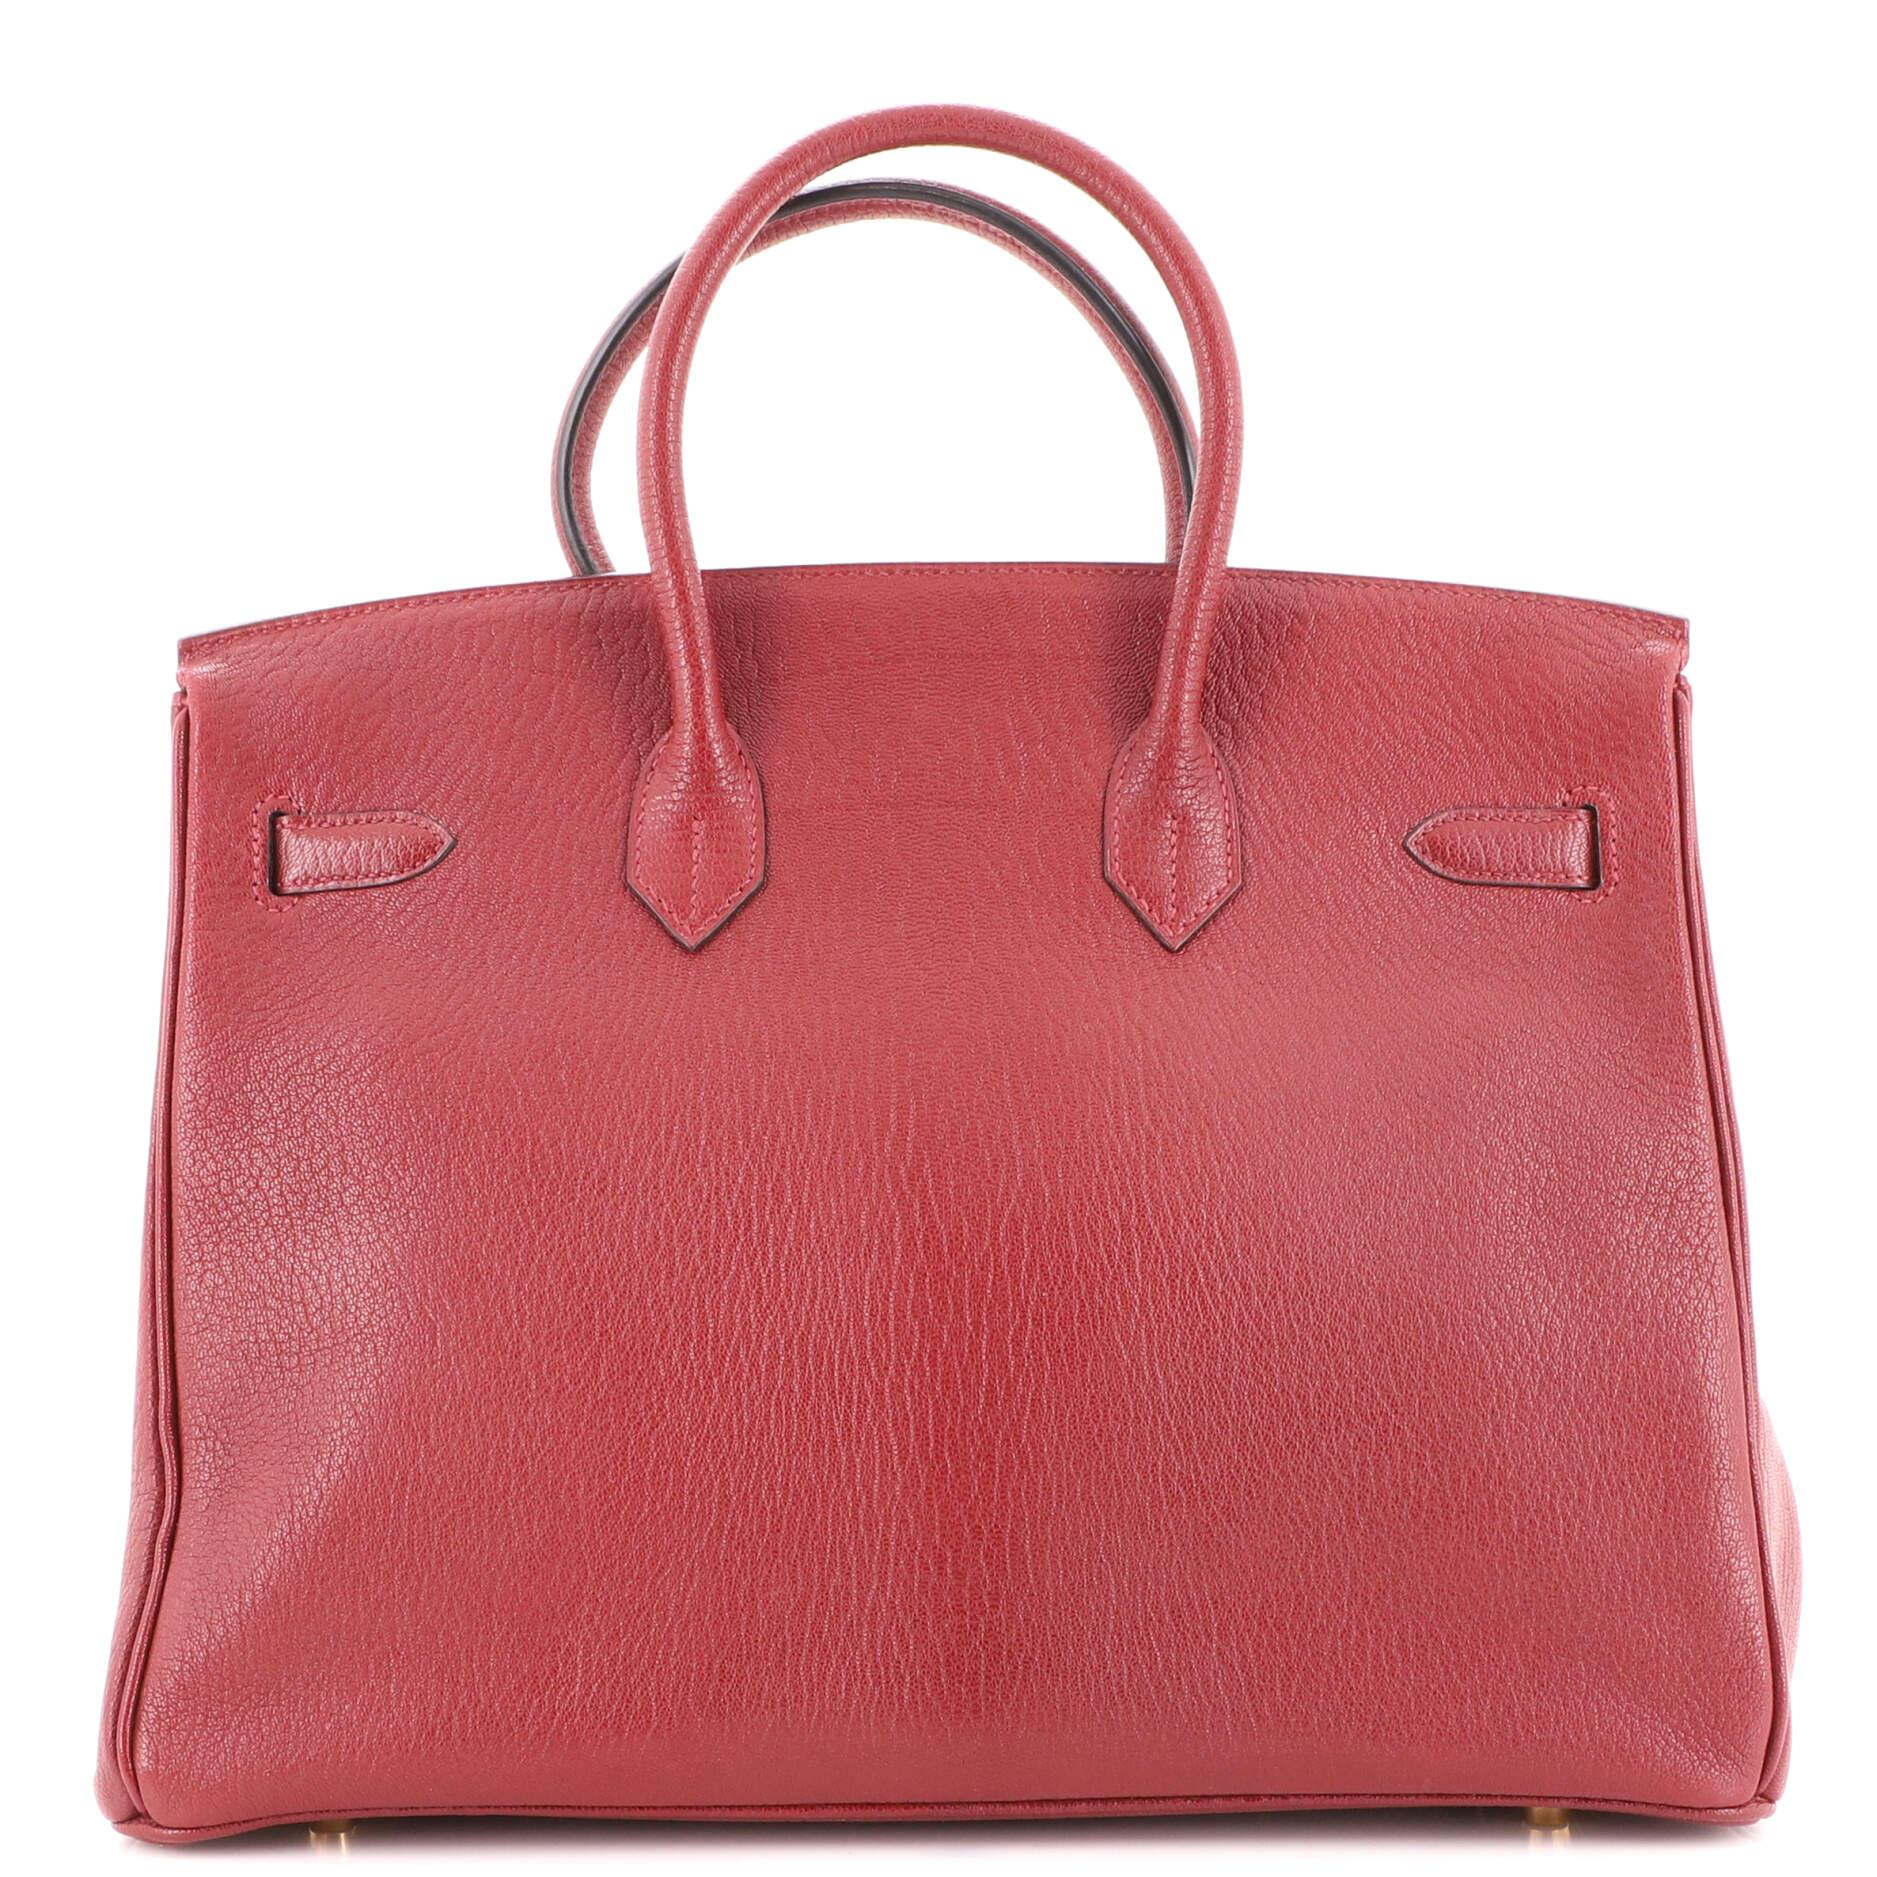 Women's or Men's Hermes Birkin Handbag Rouge H Chevre de Coromandel with Gold Hardware 35